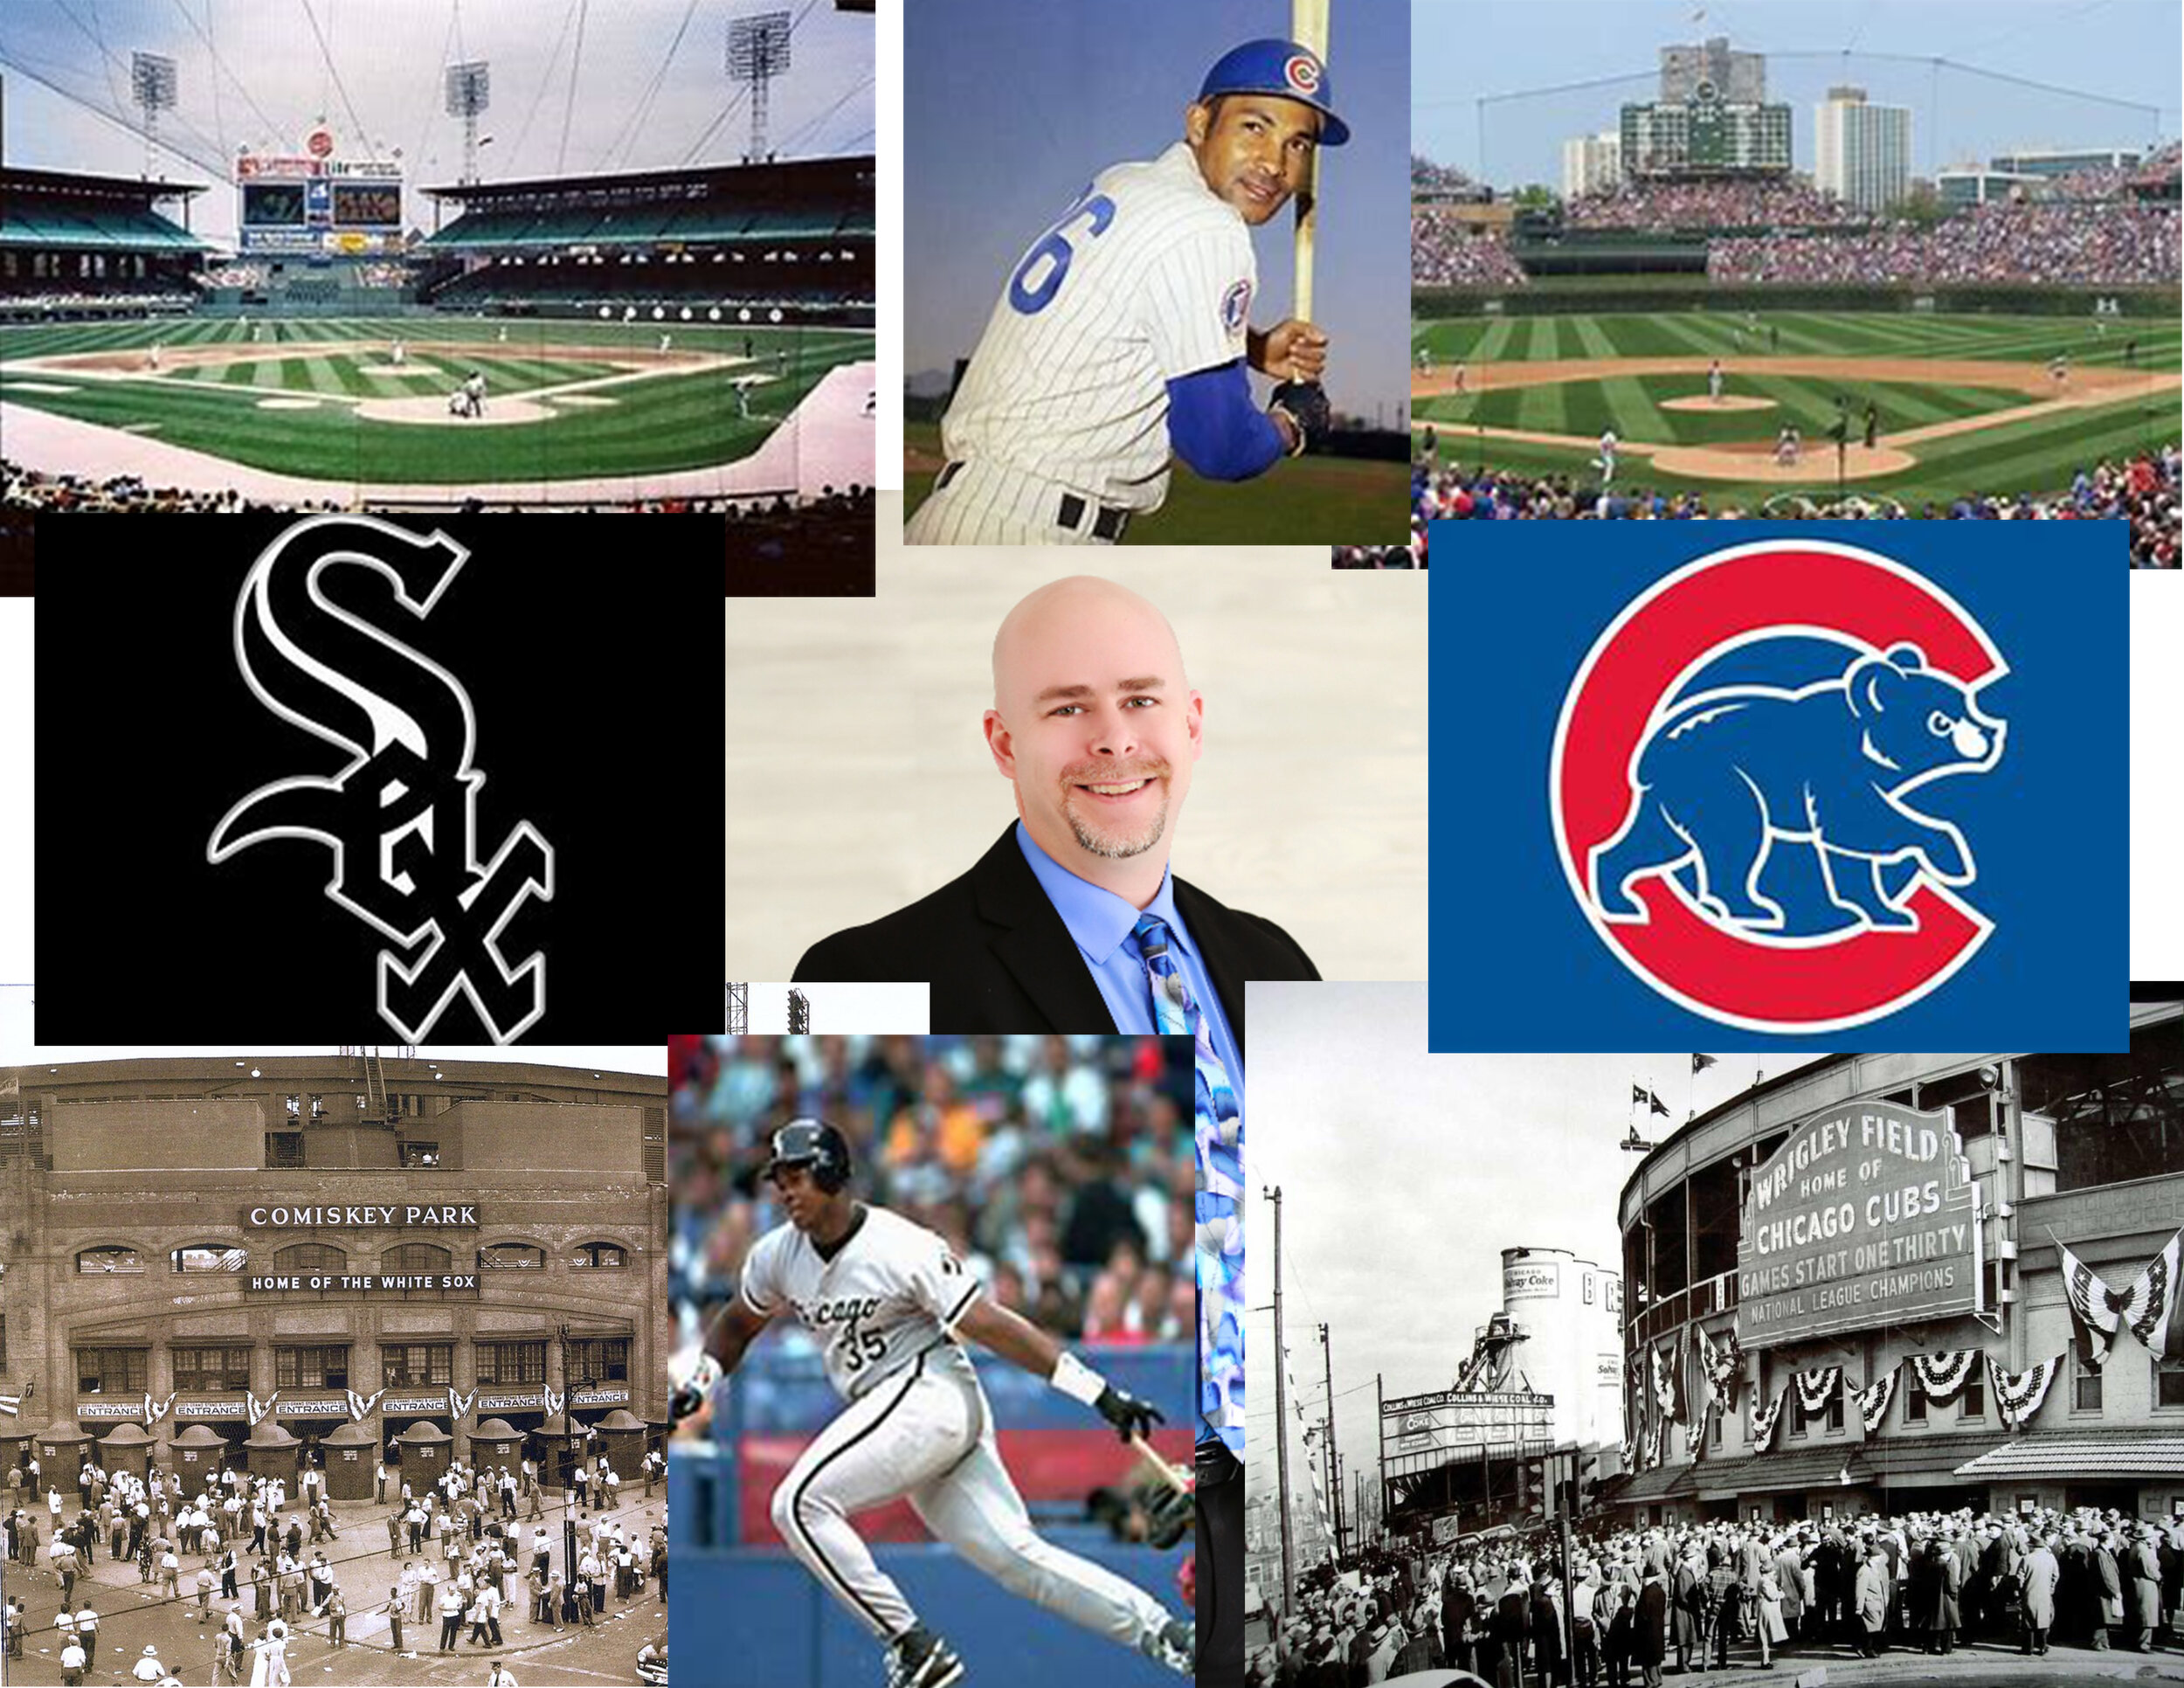 Chicago Baseball Program Image.jpg